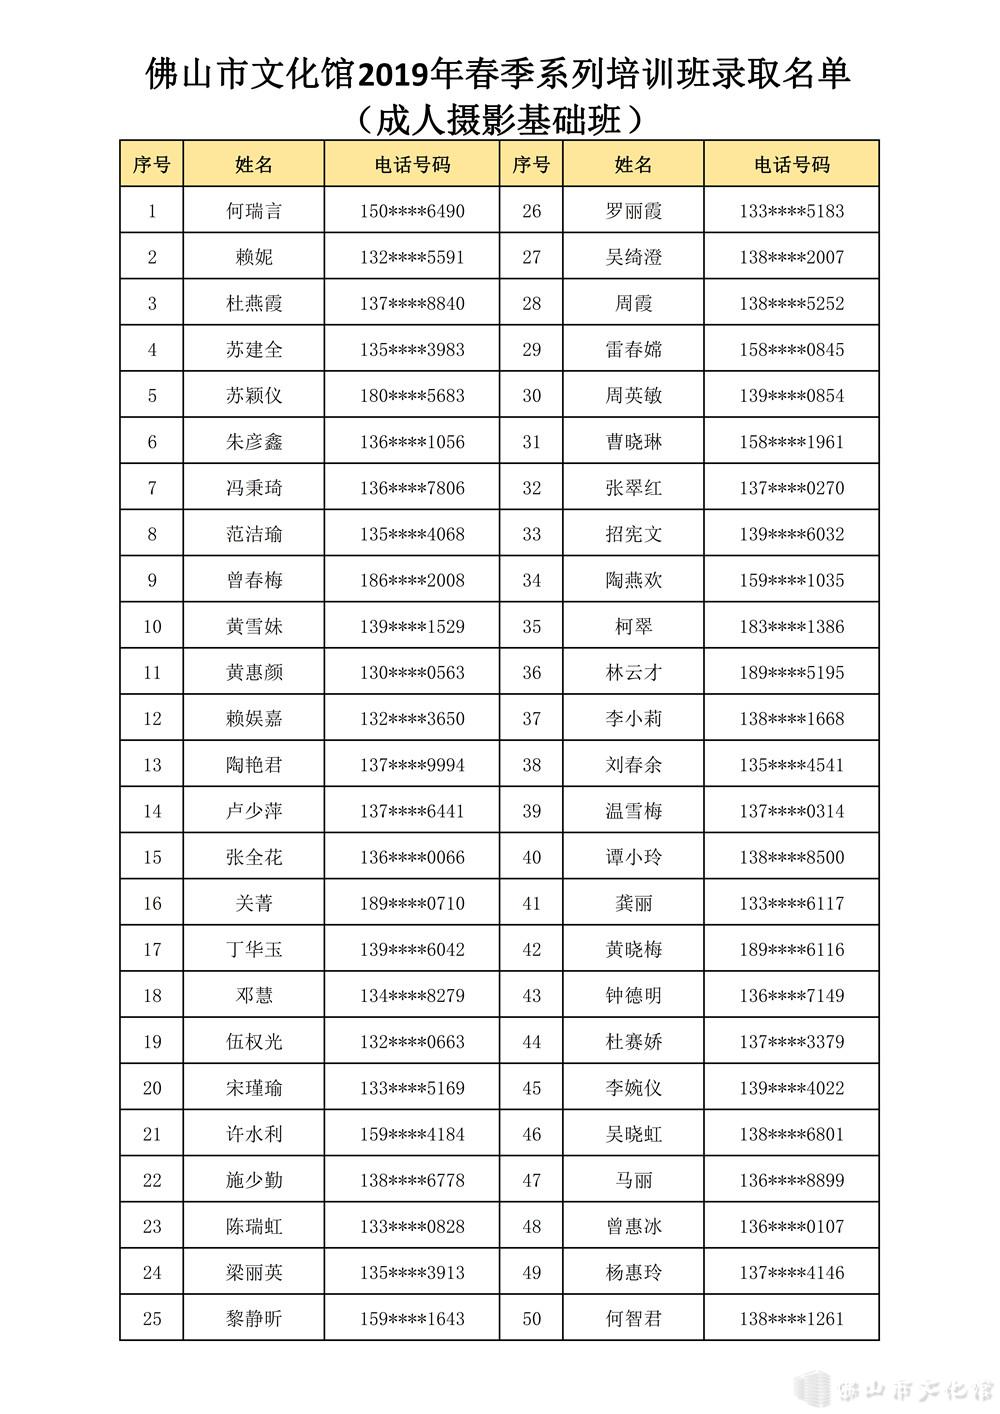 【已编辑】成人系列2019春季系列培训班录取名单_1_副本.jpg